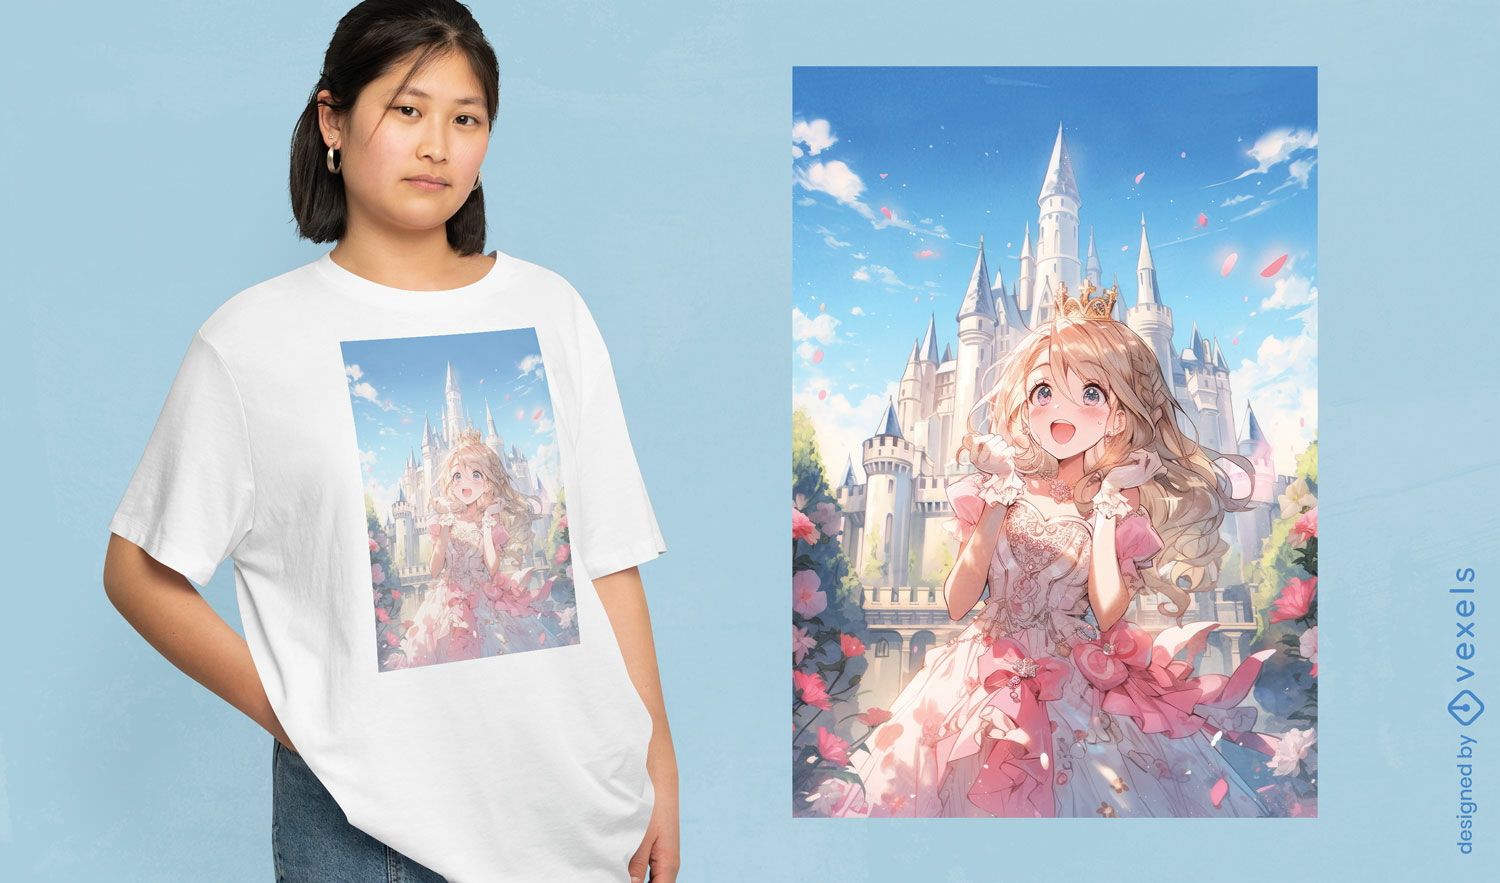 Enchanted princess t-shirt design